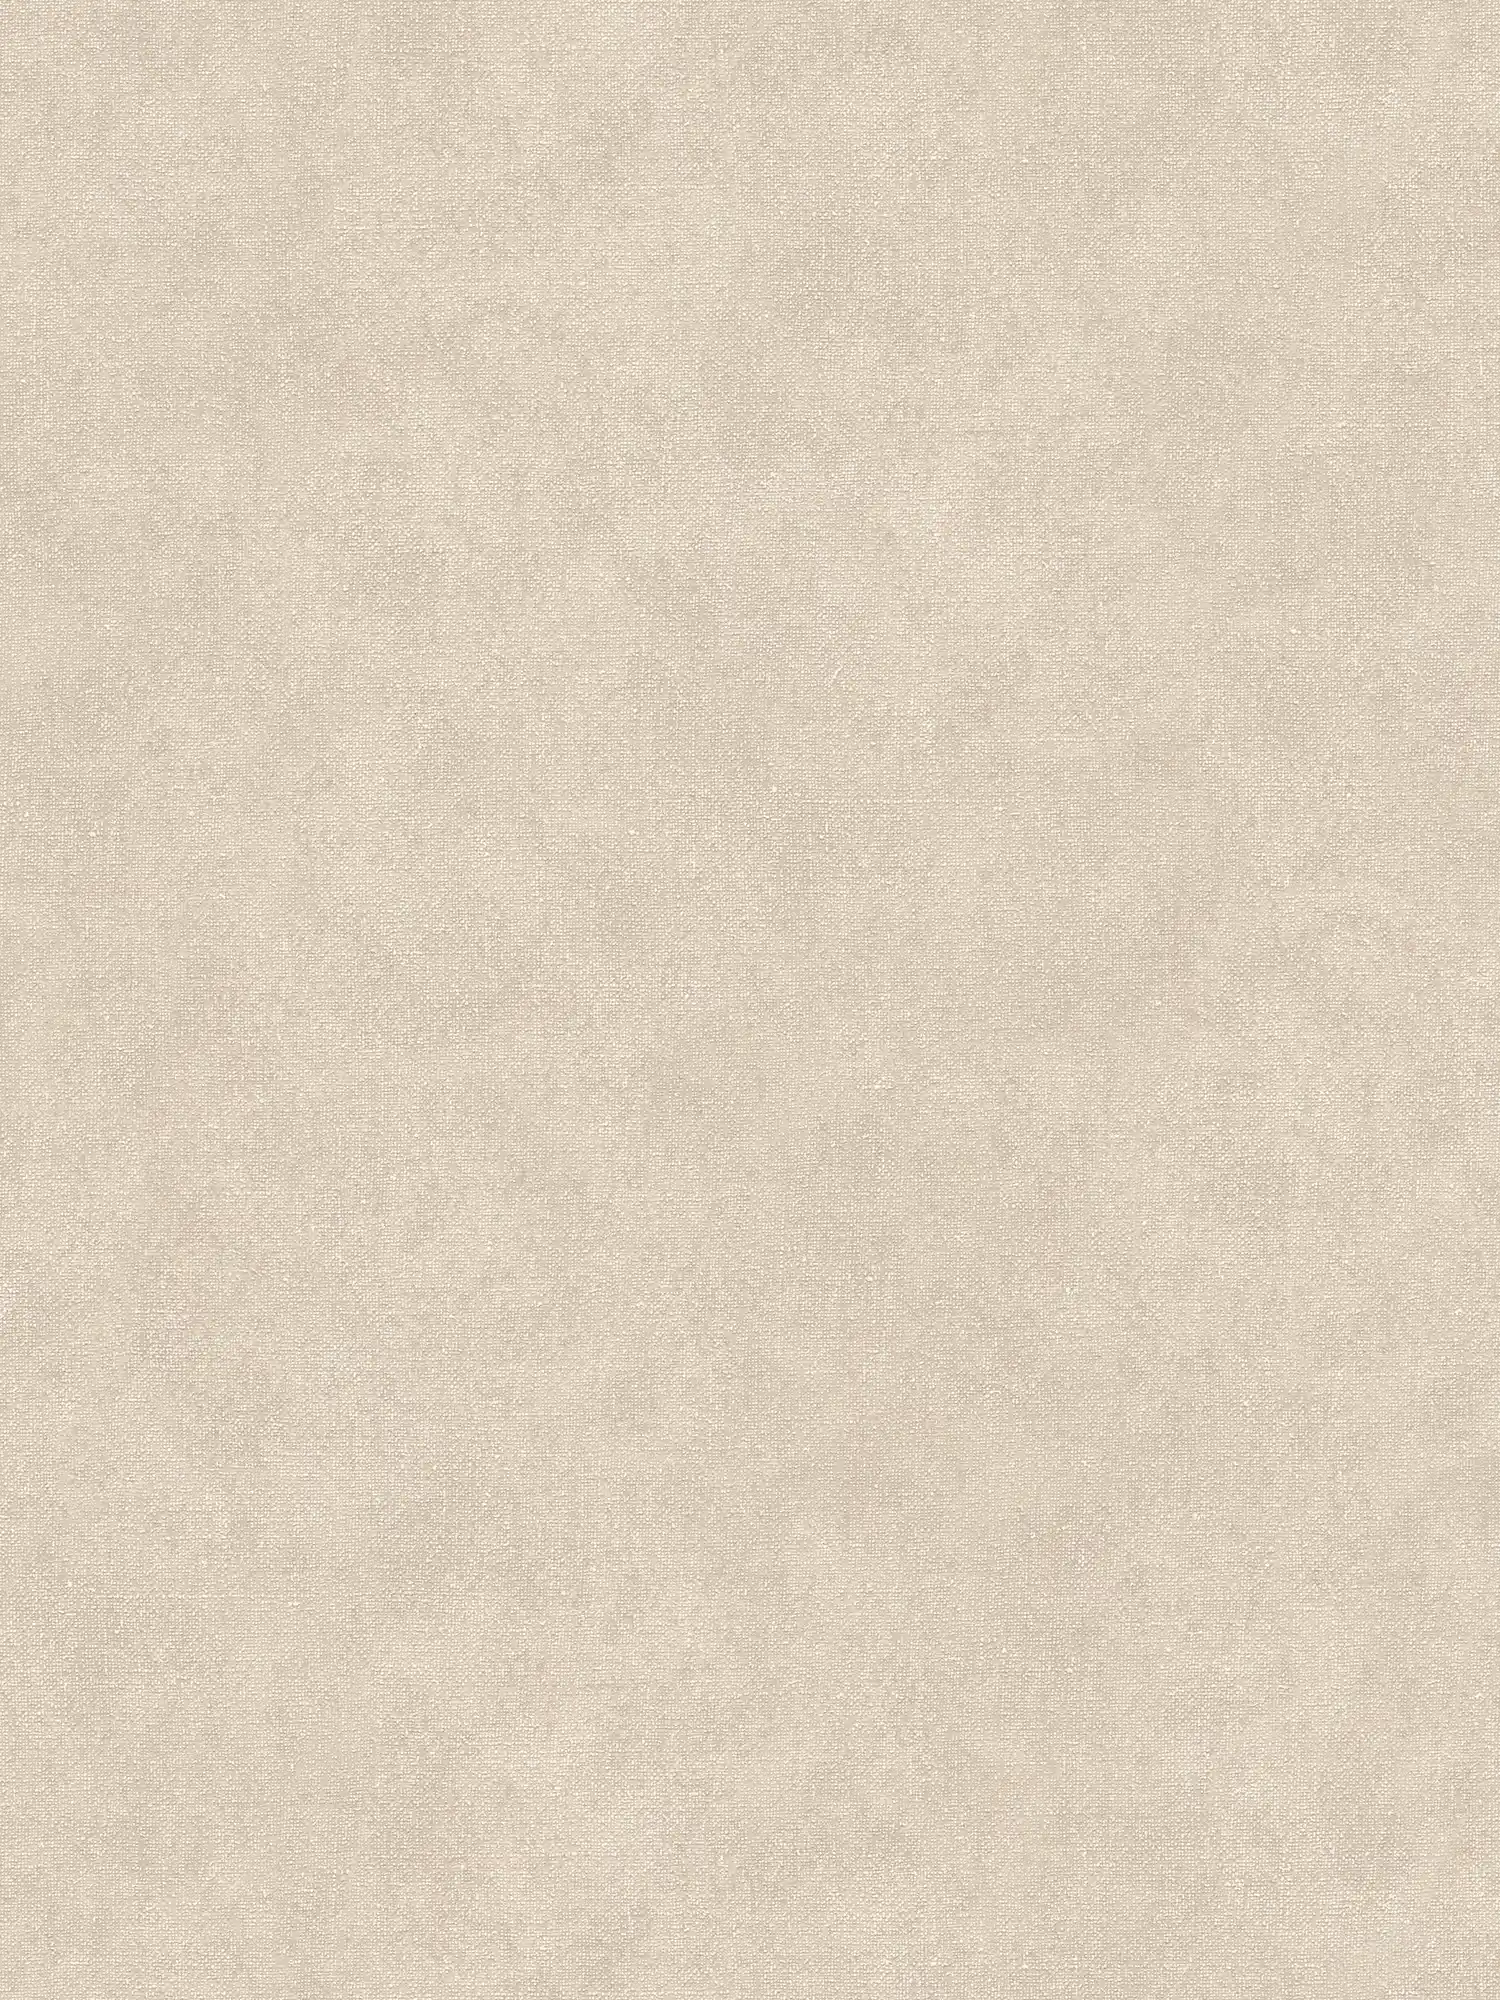 papel pintado unicolor beige con diseño de textura de yeso
